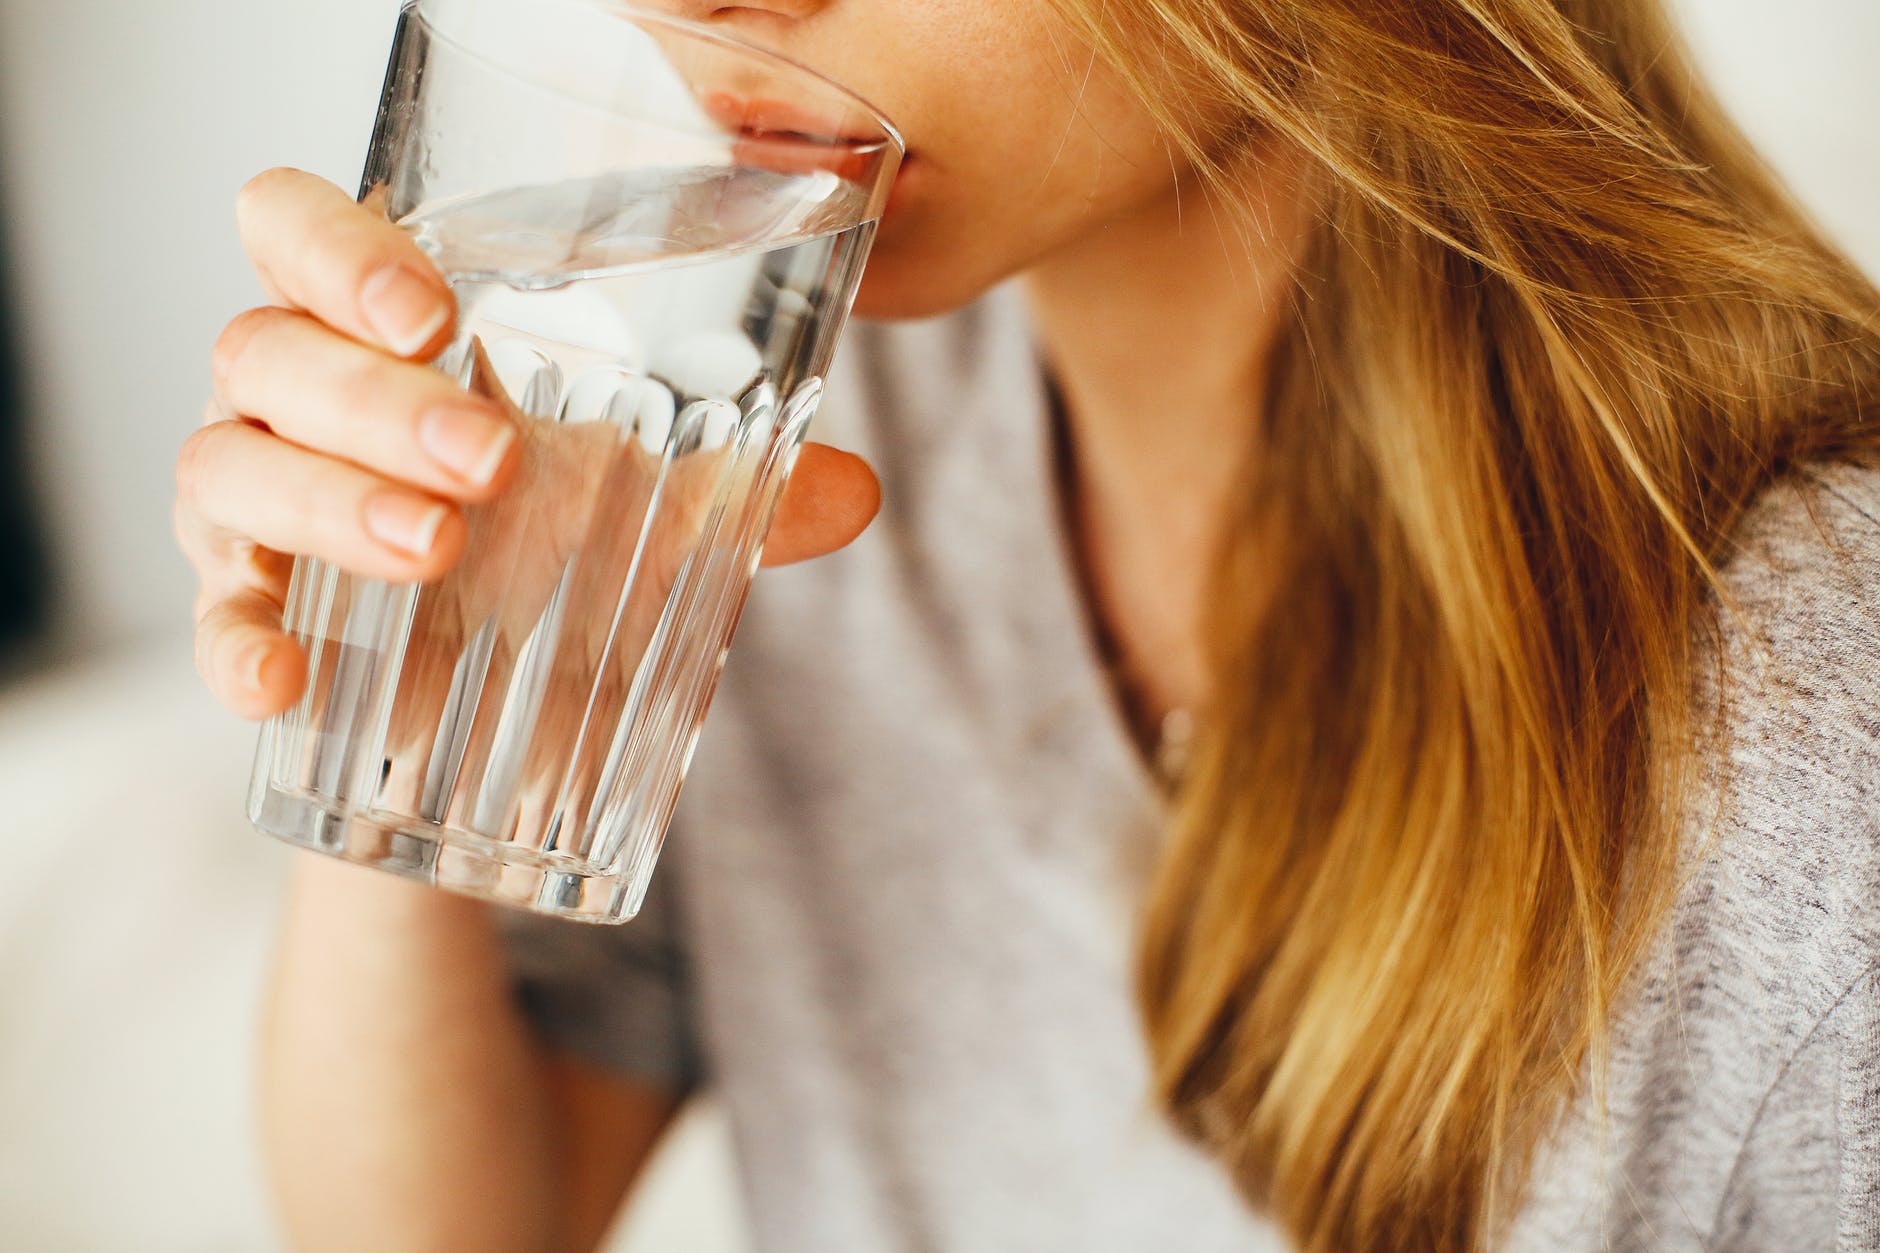 đừng uống nhiều nước trong bữa ăn